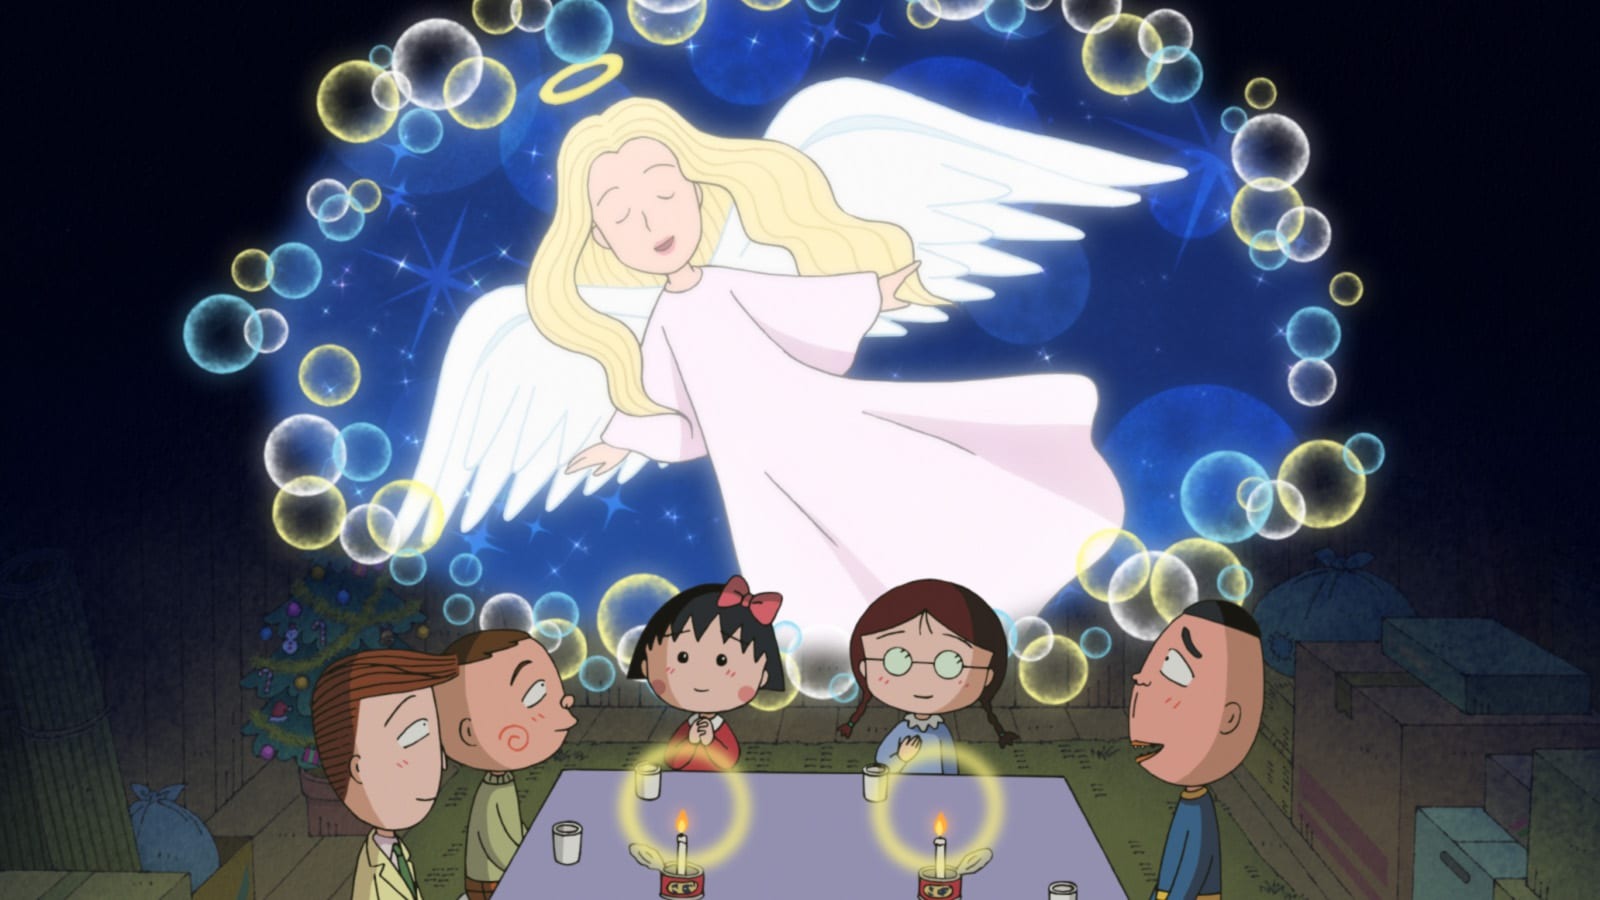 アニメ ちびまる子ちゃん クリスマス 大みそか原作スペシャル で 1996年放送の人気エピソードをリメイク 超 アニメディア